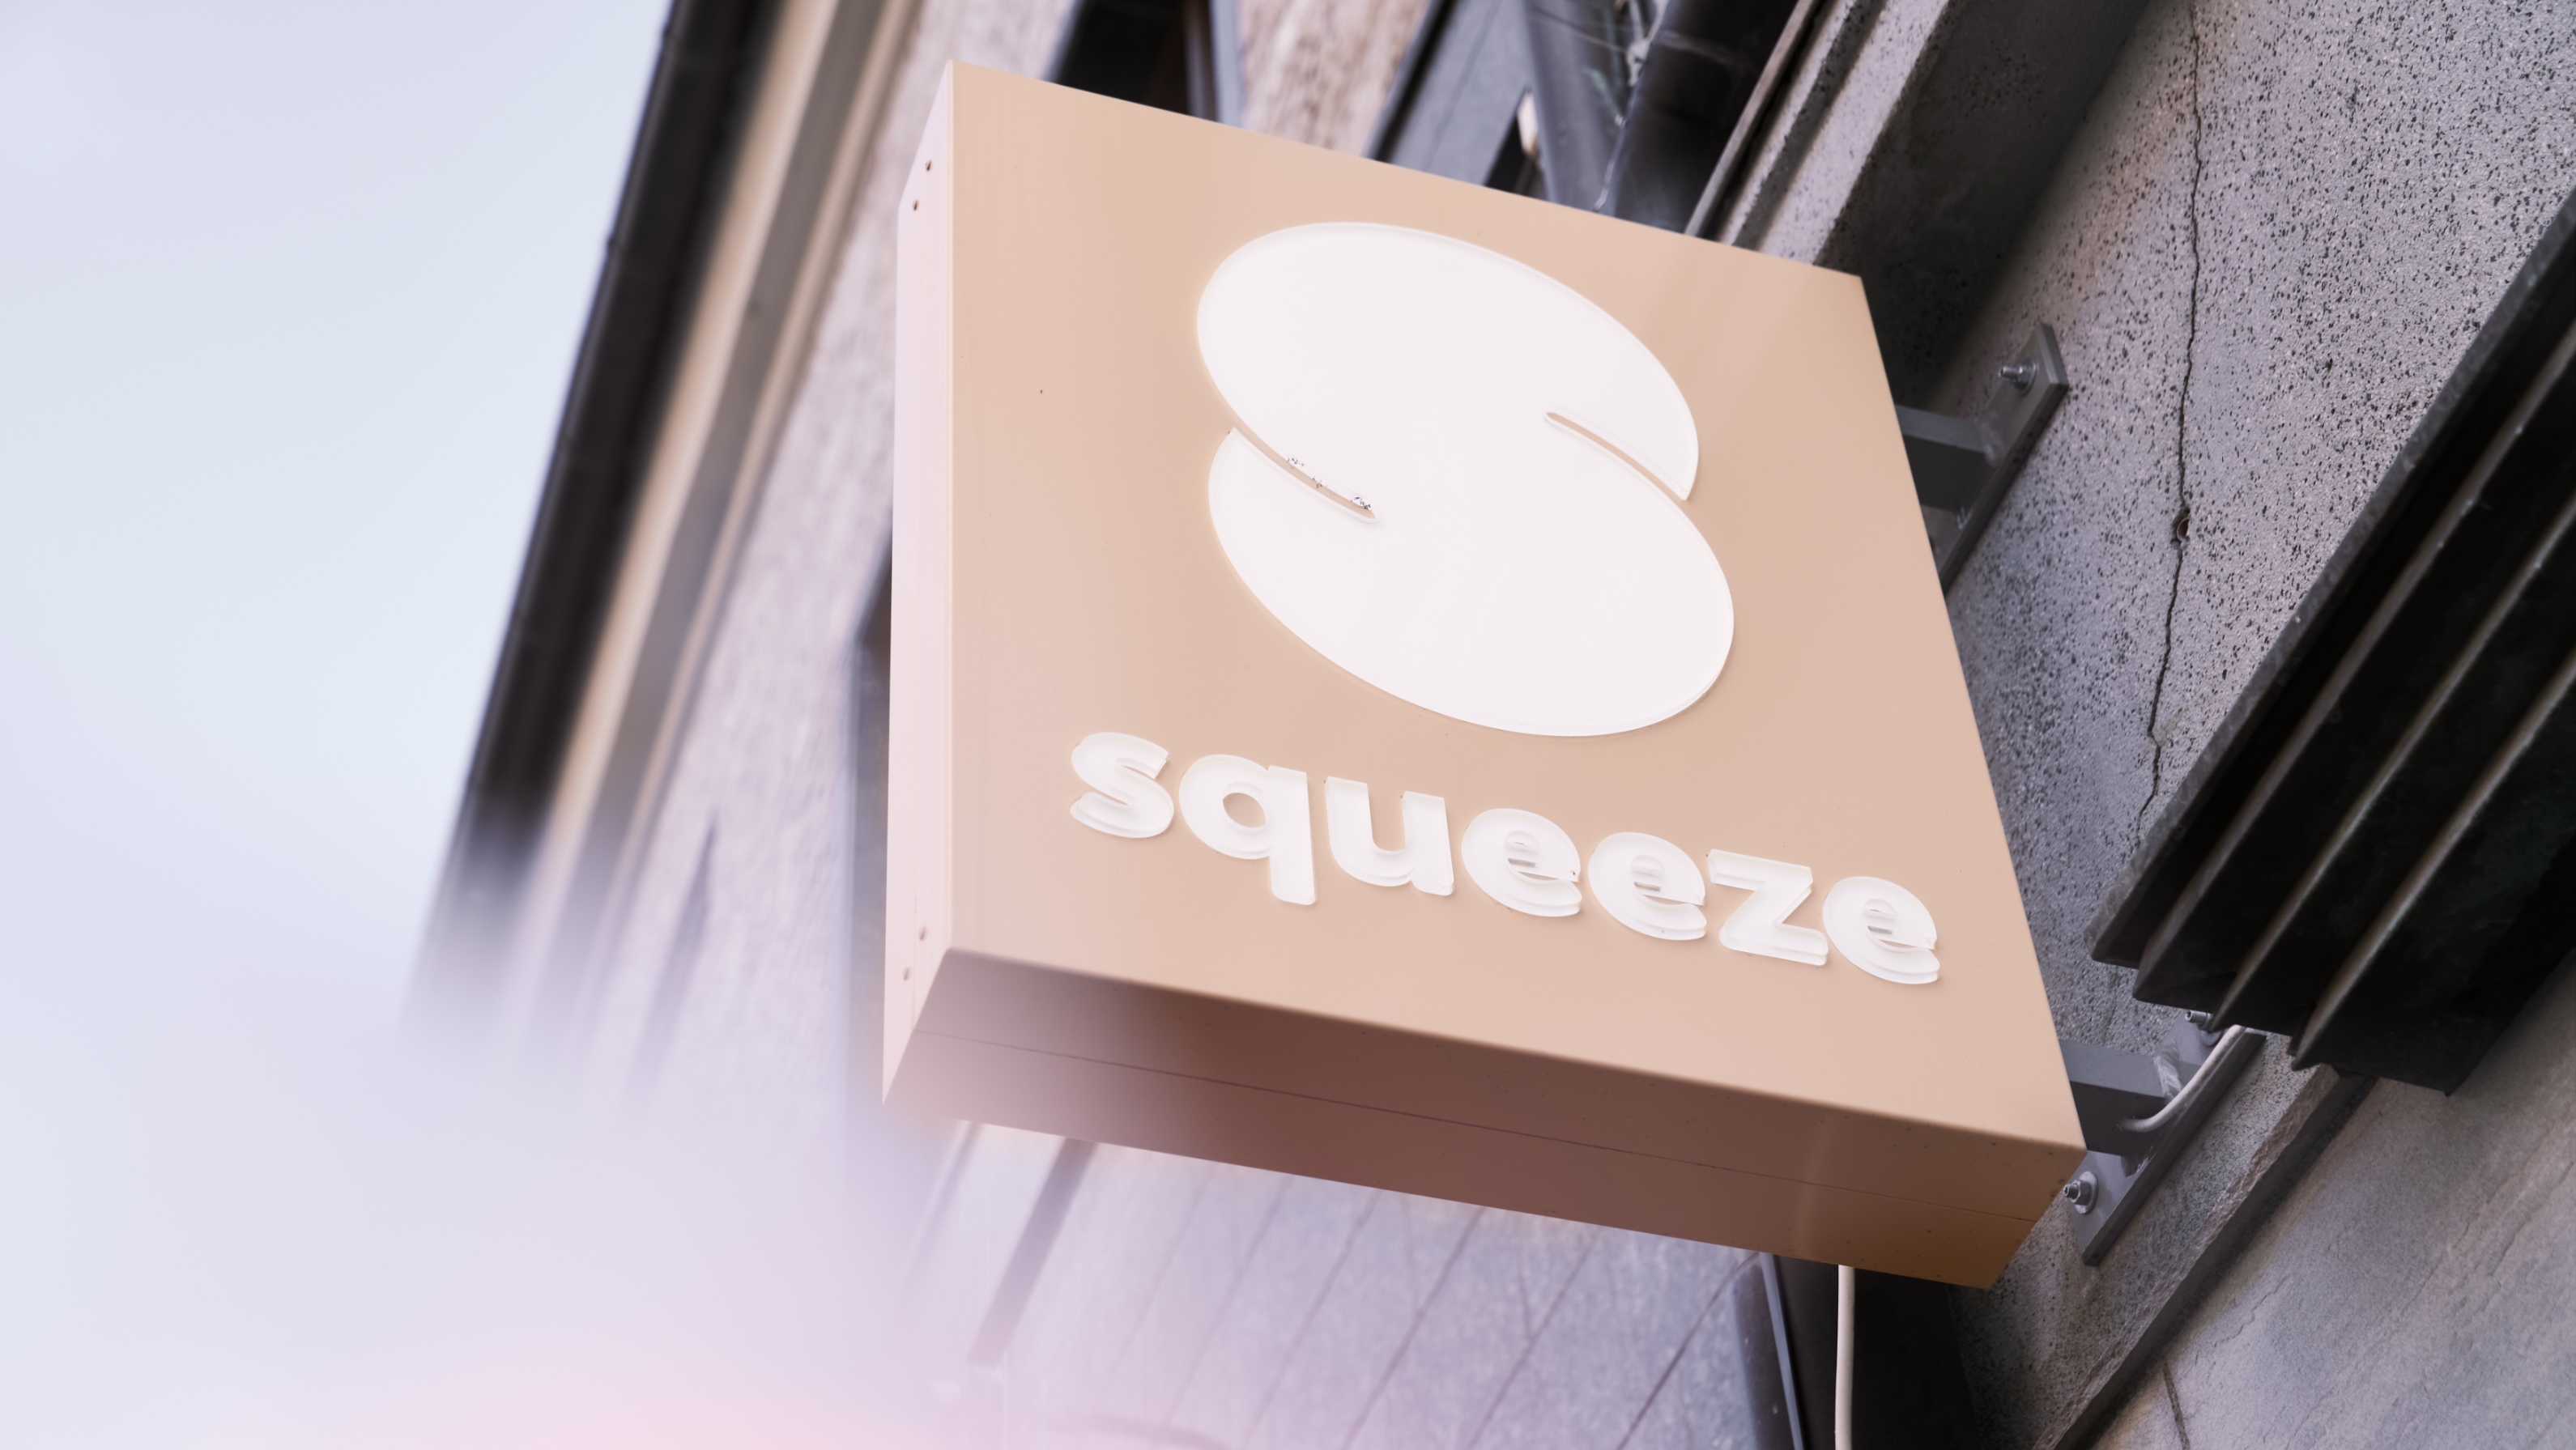 Squeeze Massage Chain Brand Design Creation